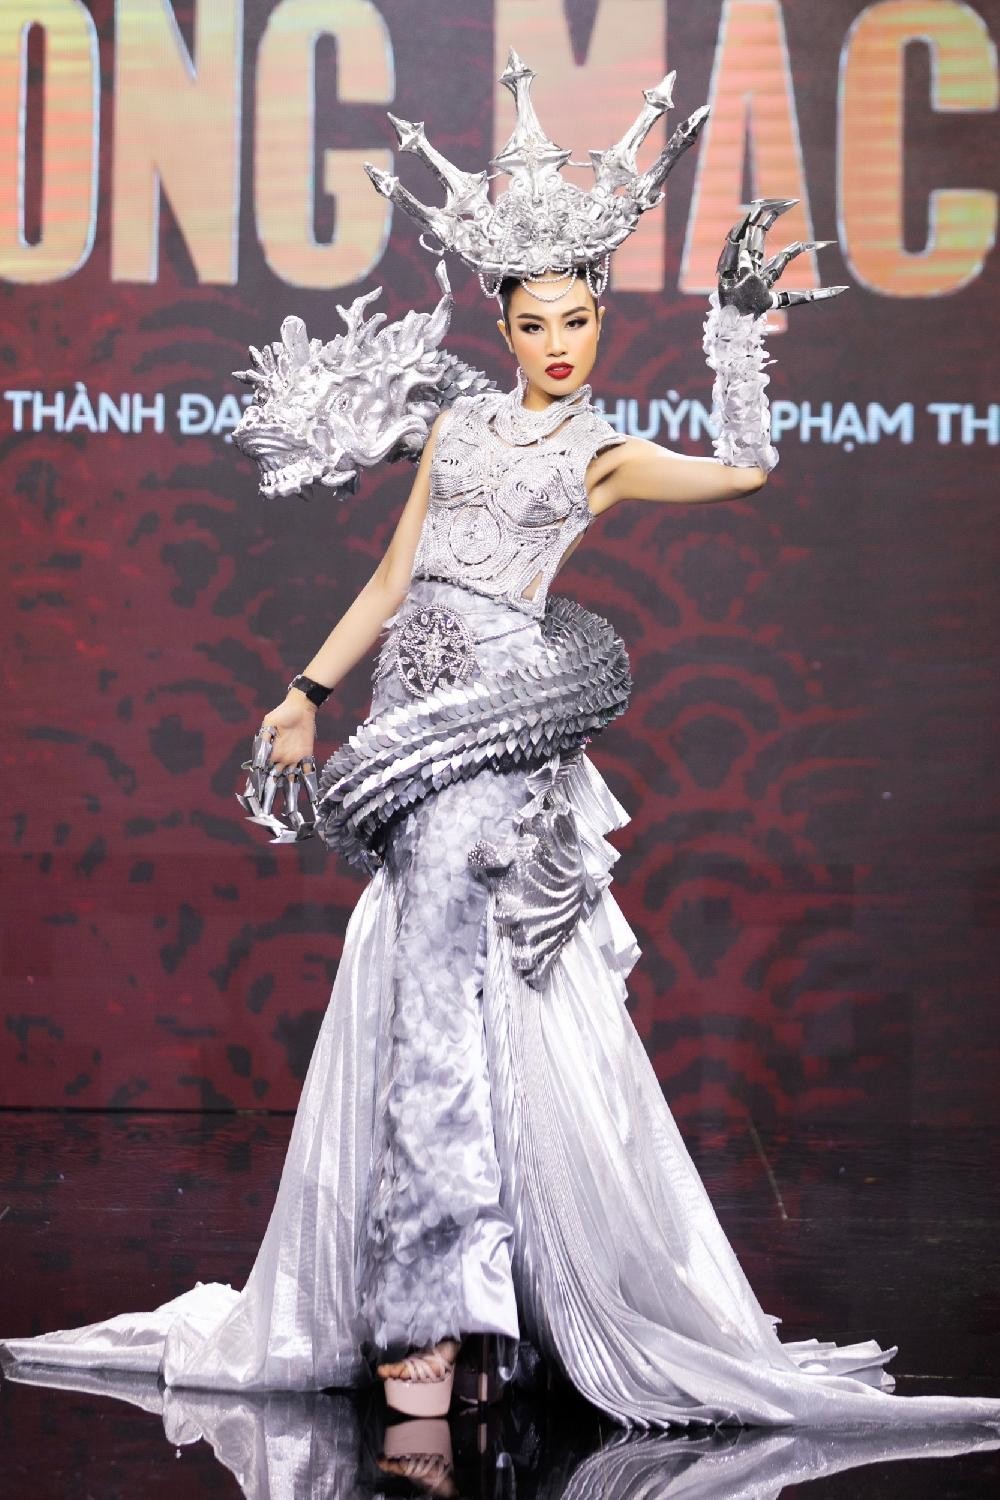 Thiết kế nào được chọn làm Trang phục Dân tộc cho tân Hoa hậu Hoàn vũ Việt Nam? ảnh 16